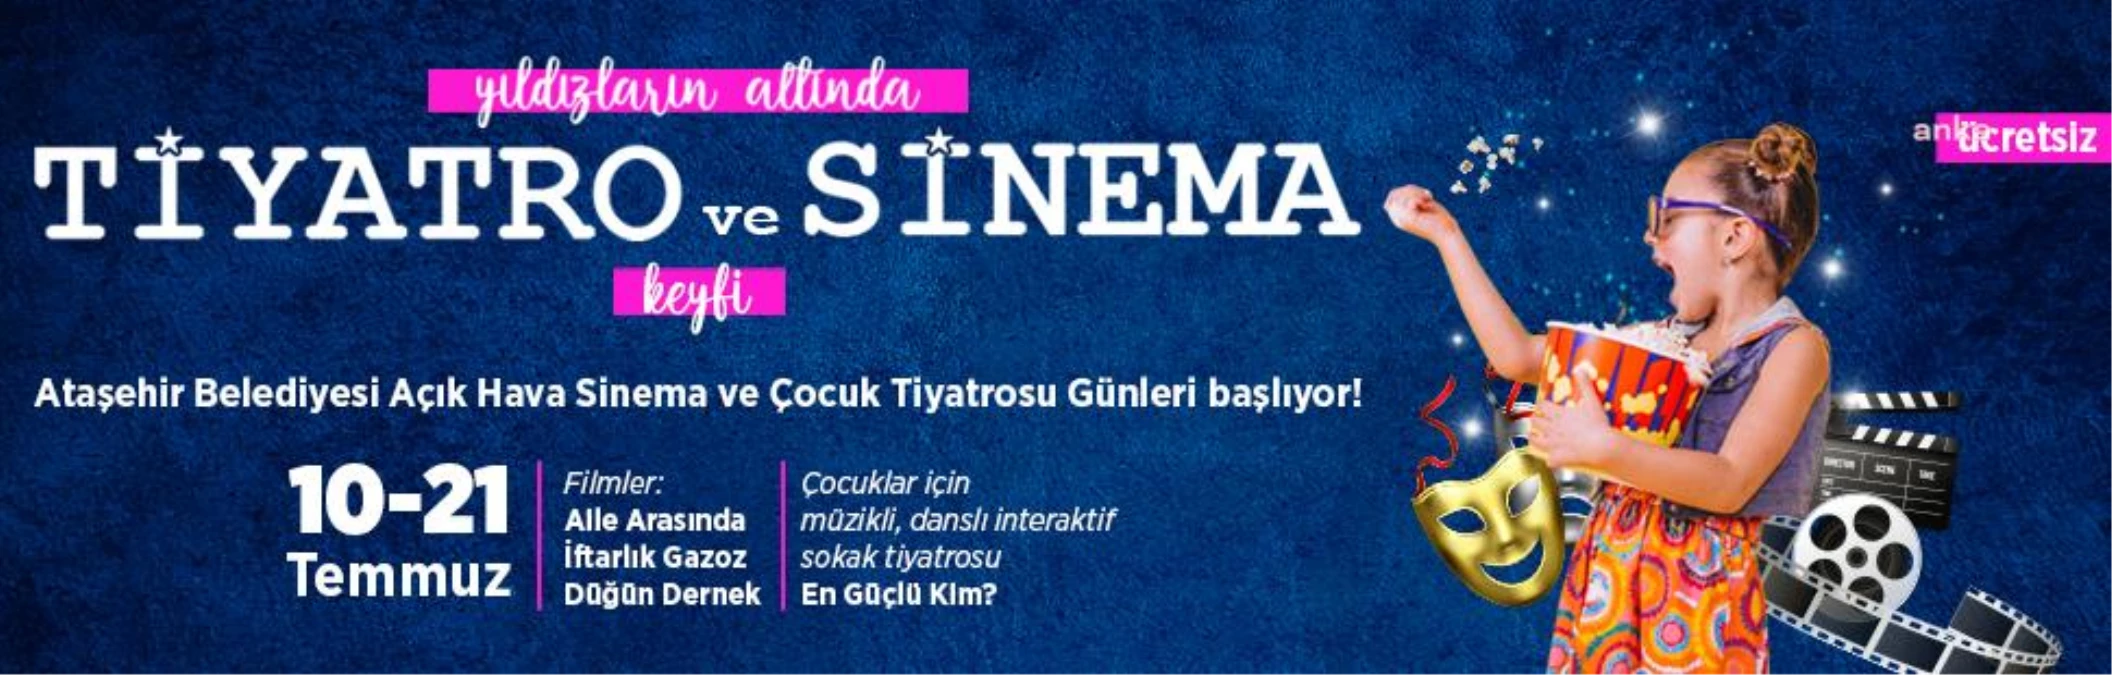 Ataşehir Parkları Yaz Akşamlarında Komedi Filmleri ve Tiyatro Oyunlarına Ev Sahipliği Yapacak